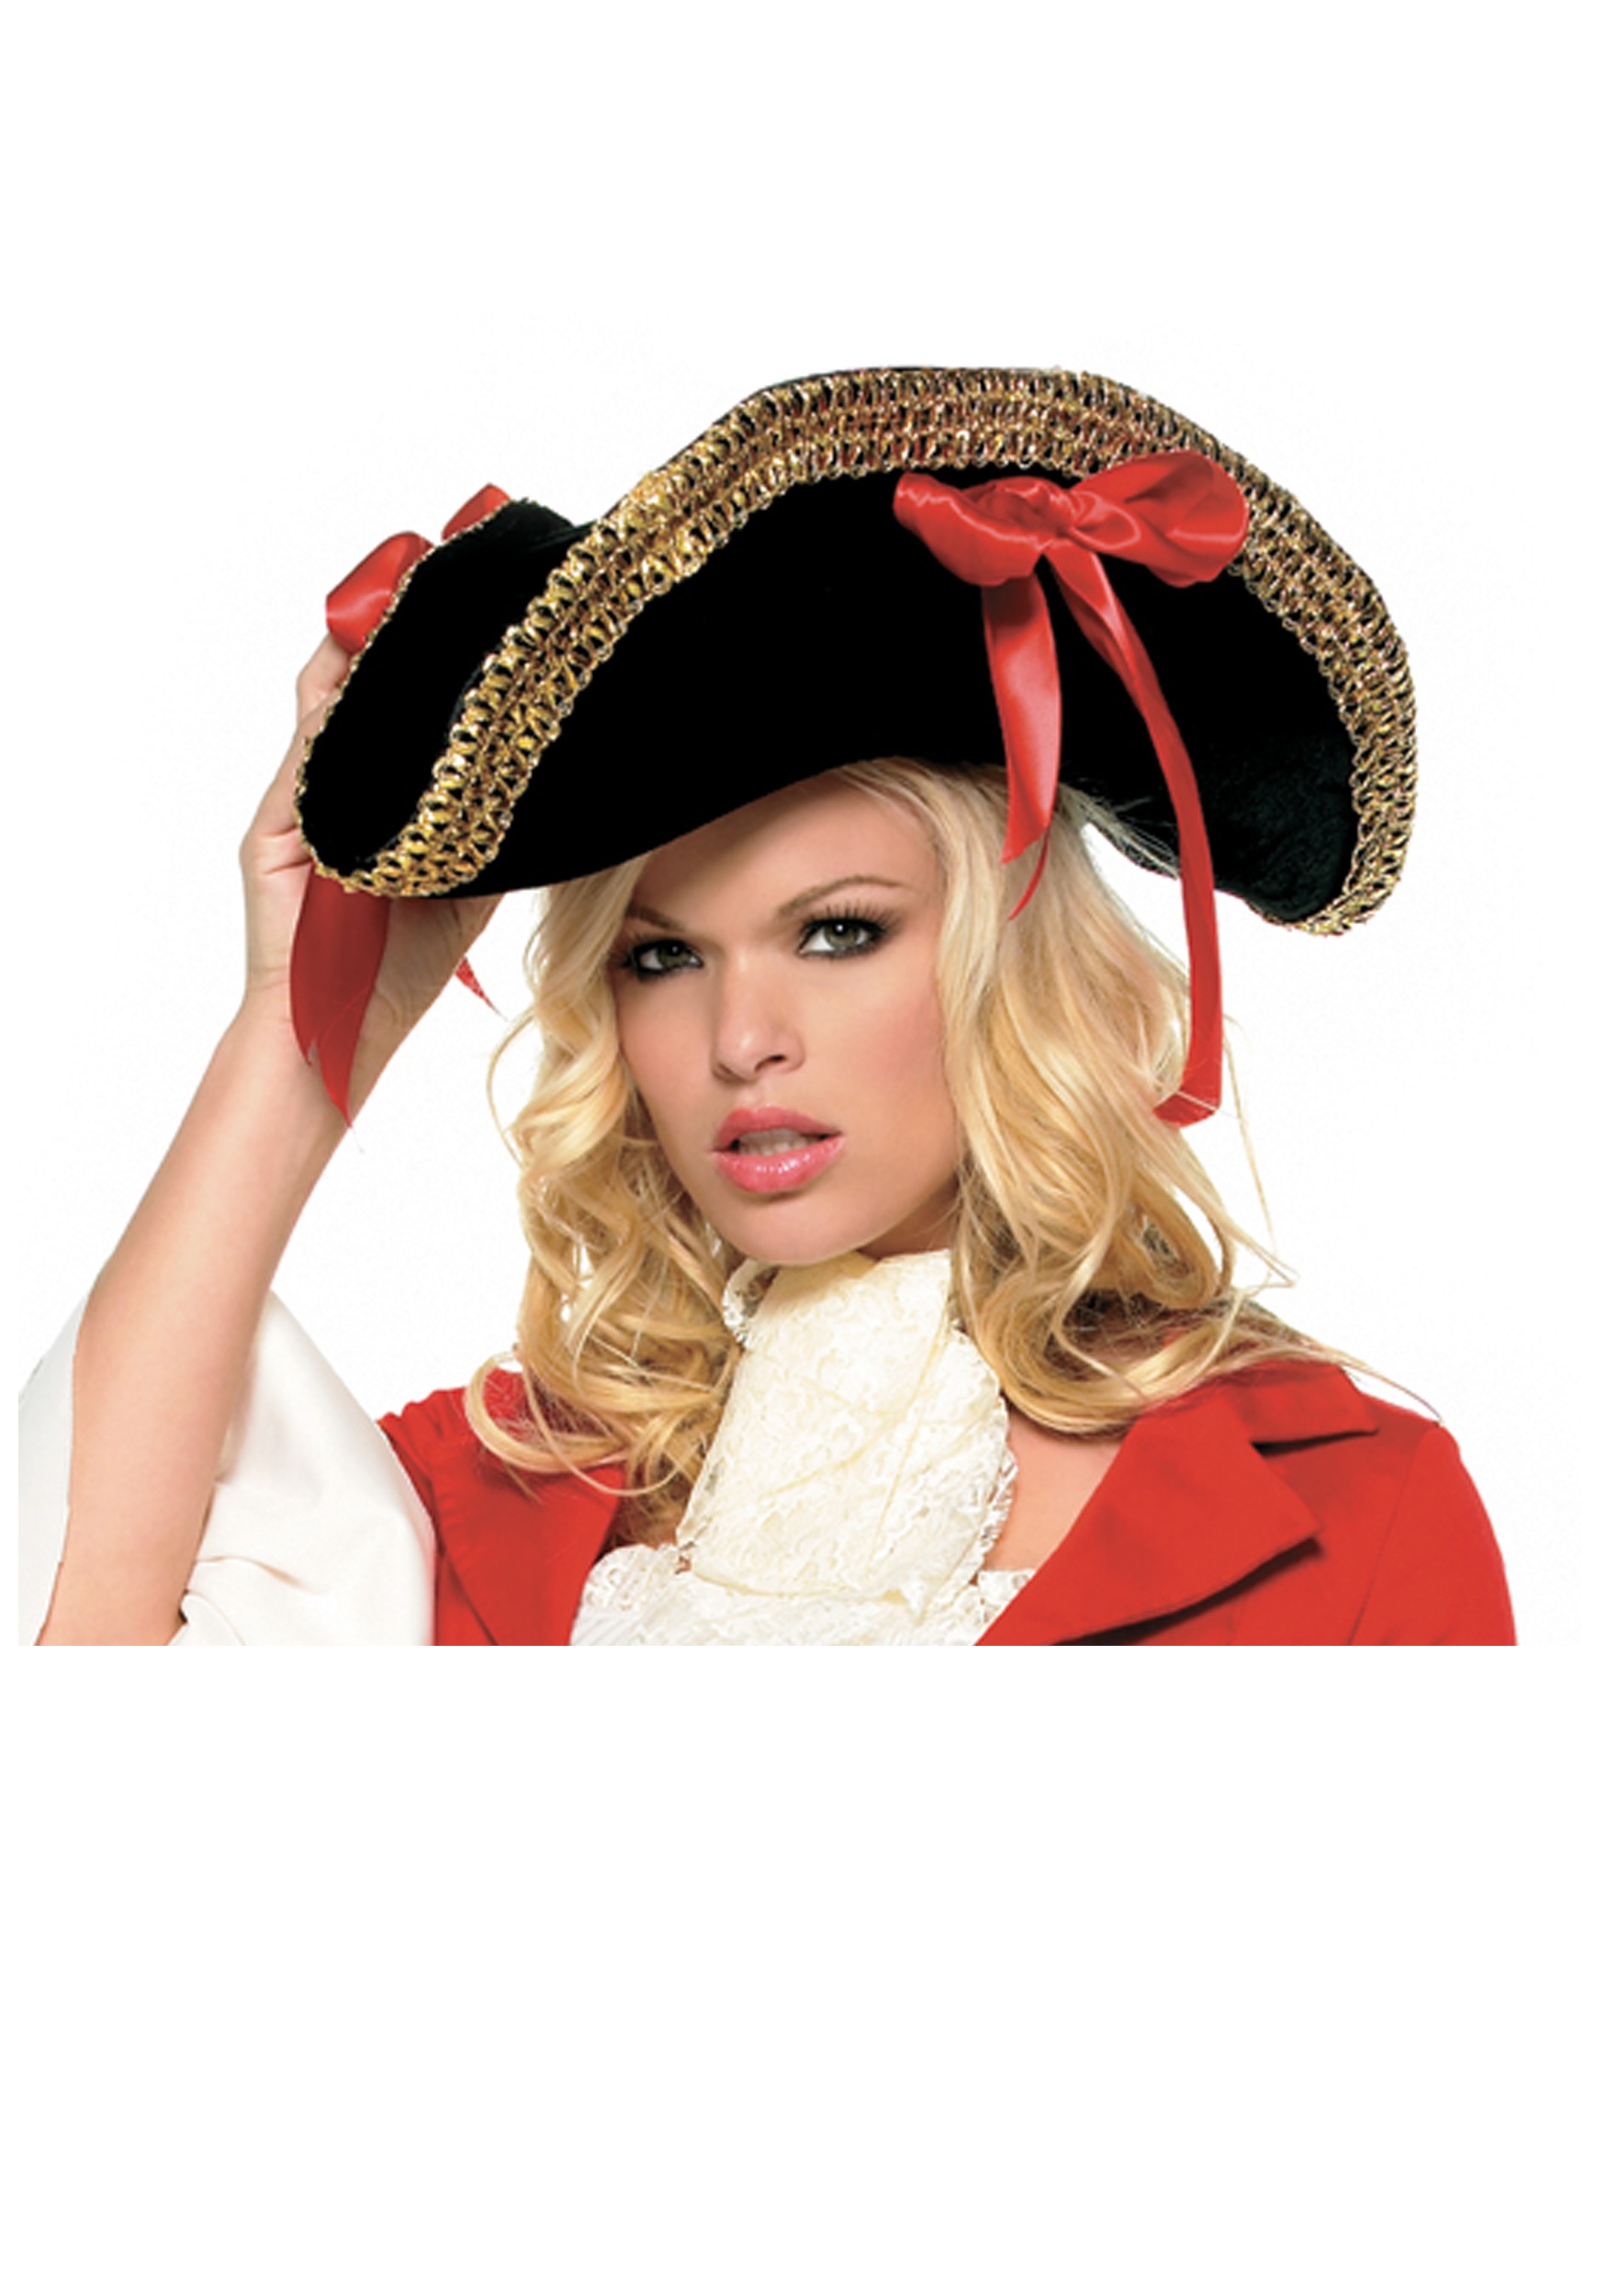 Detallado Desmenuzar reflejar Sombrero de mujer pirata